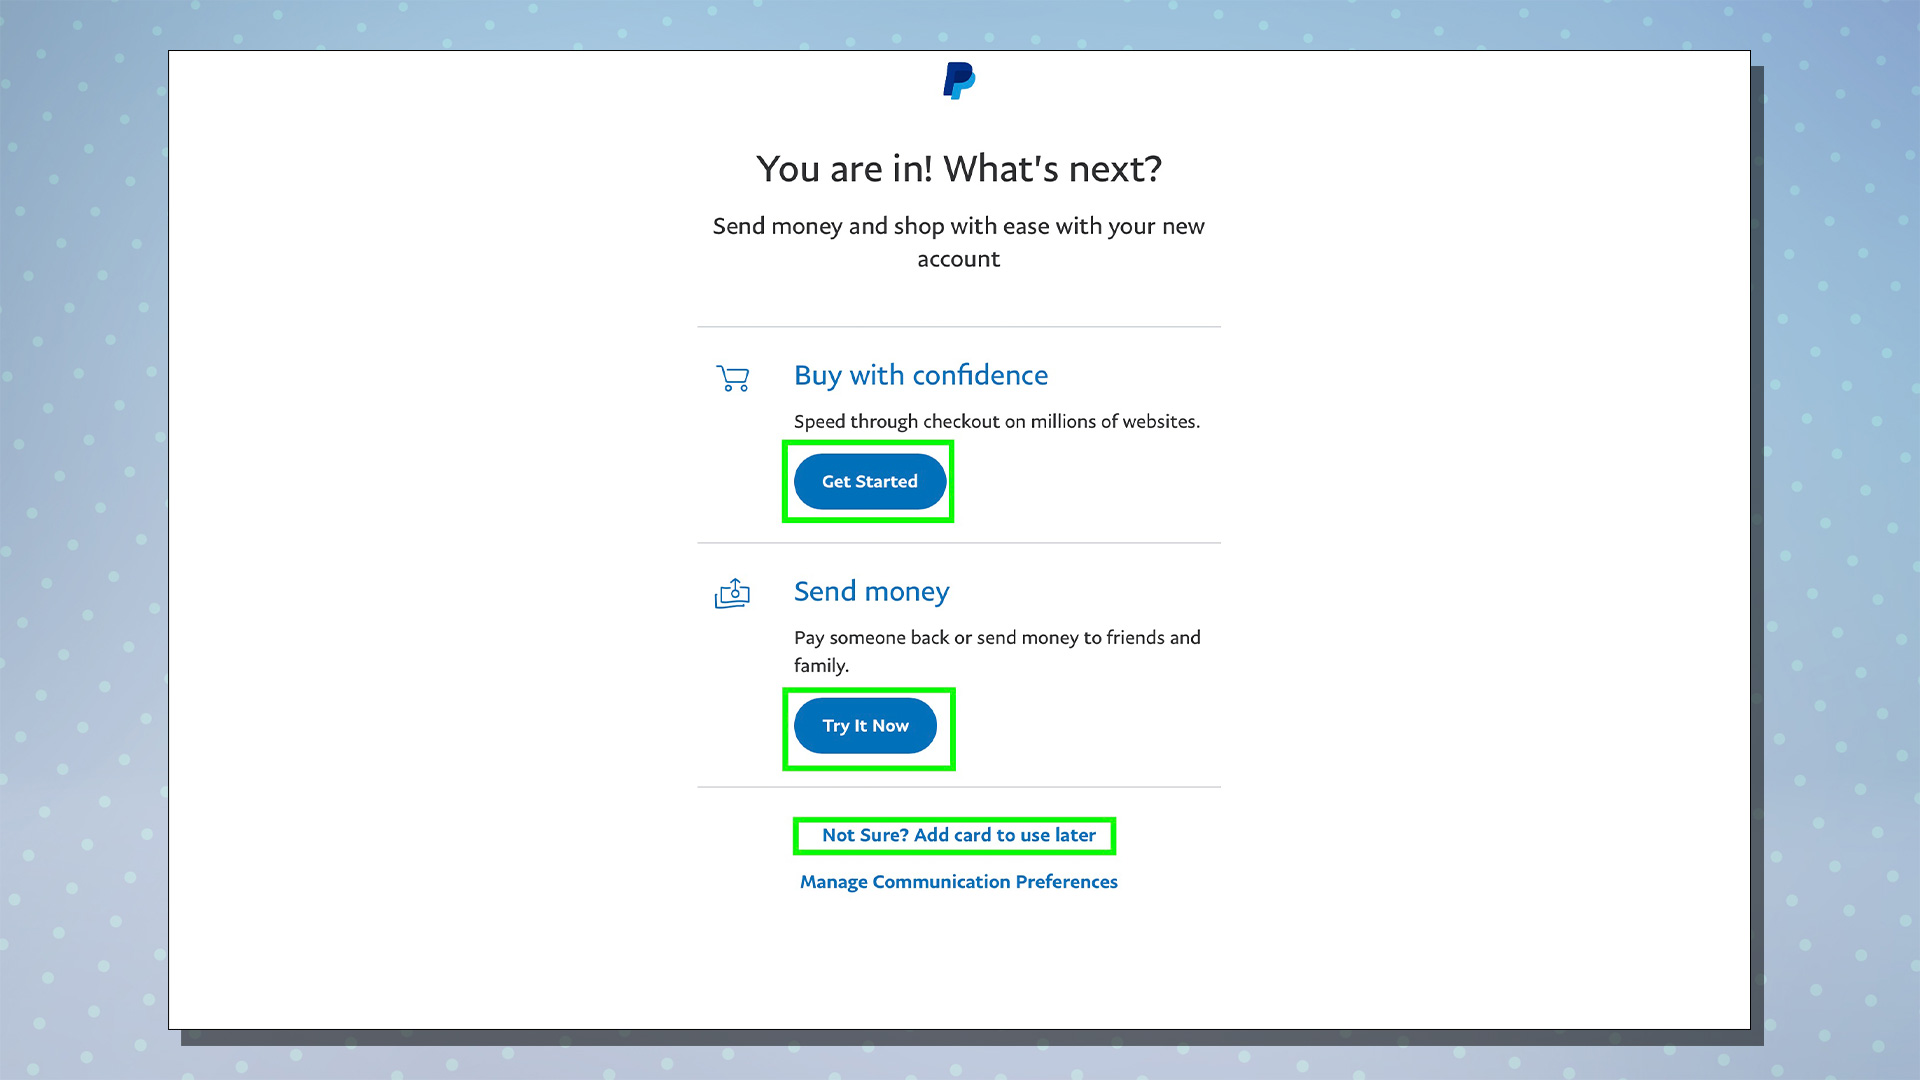 PayPal kurulum sürecini gösteren bir ekran görüntüsü.  Bu ekran, Başlayın ve Para Gönder seçeneklerini gösterir.